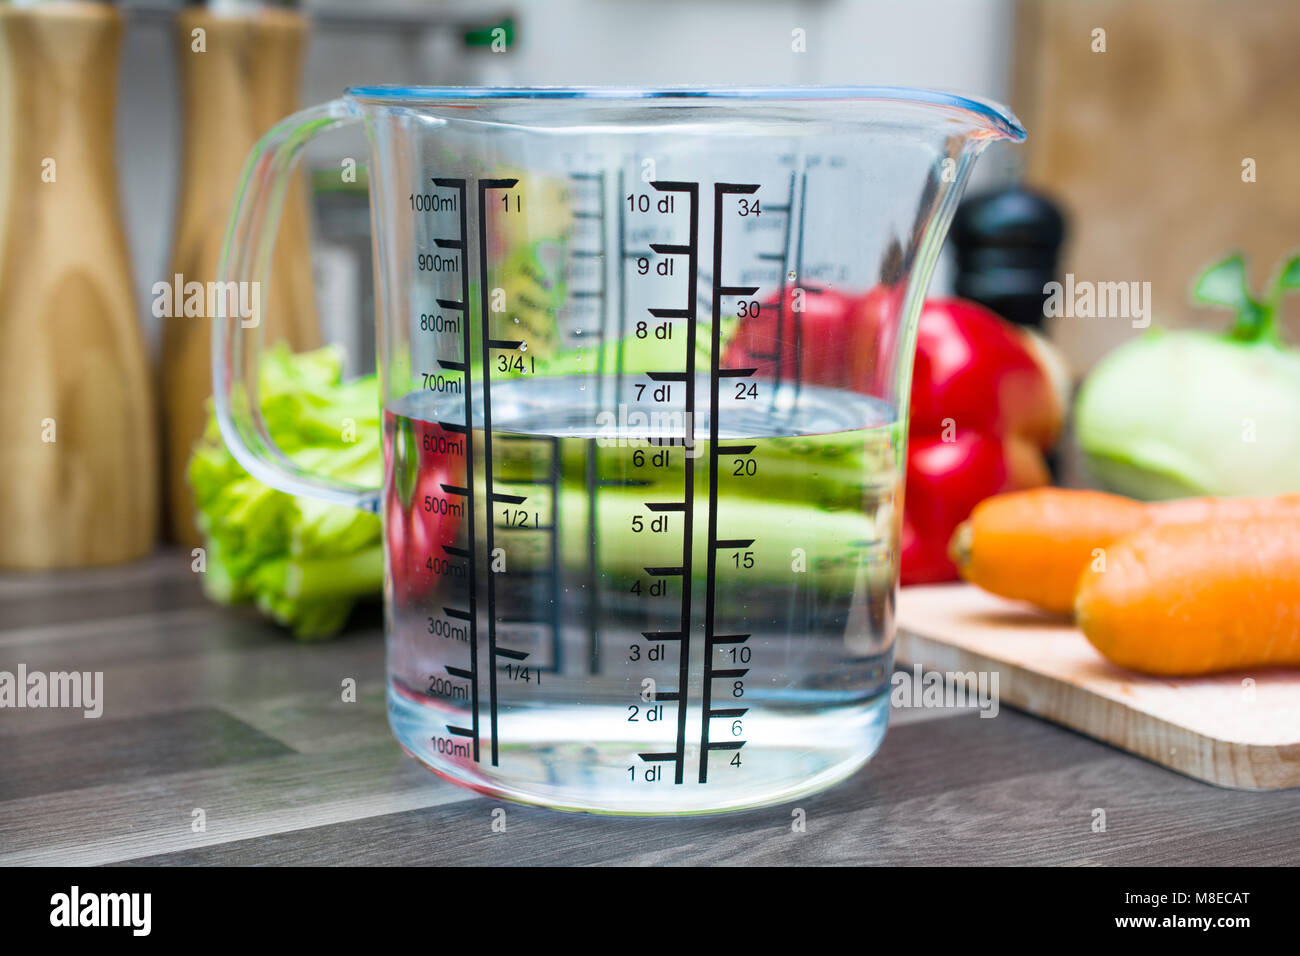 600ml / 6dl de agua en una taza de medir en una cocina con verduras  Fotografía de stock - Alamy